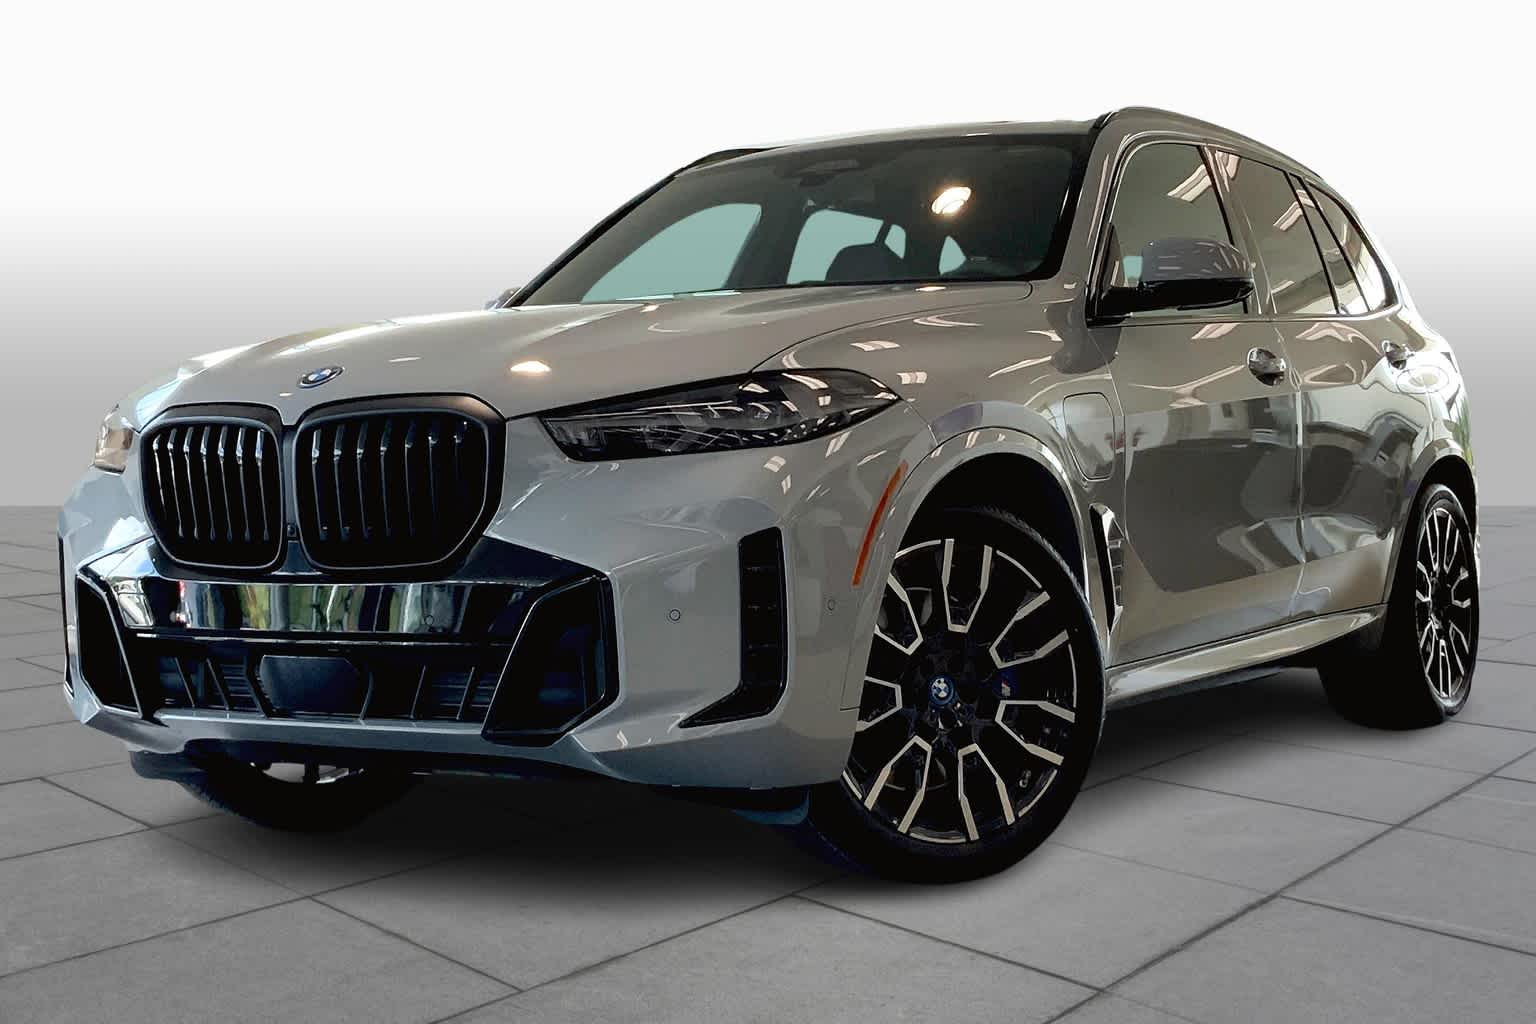 BMW схвалила сім шинних брендів для своєї найновішої серії автомобілів